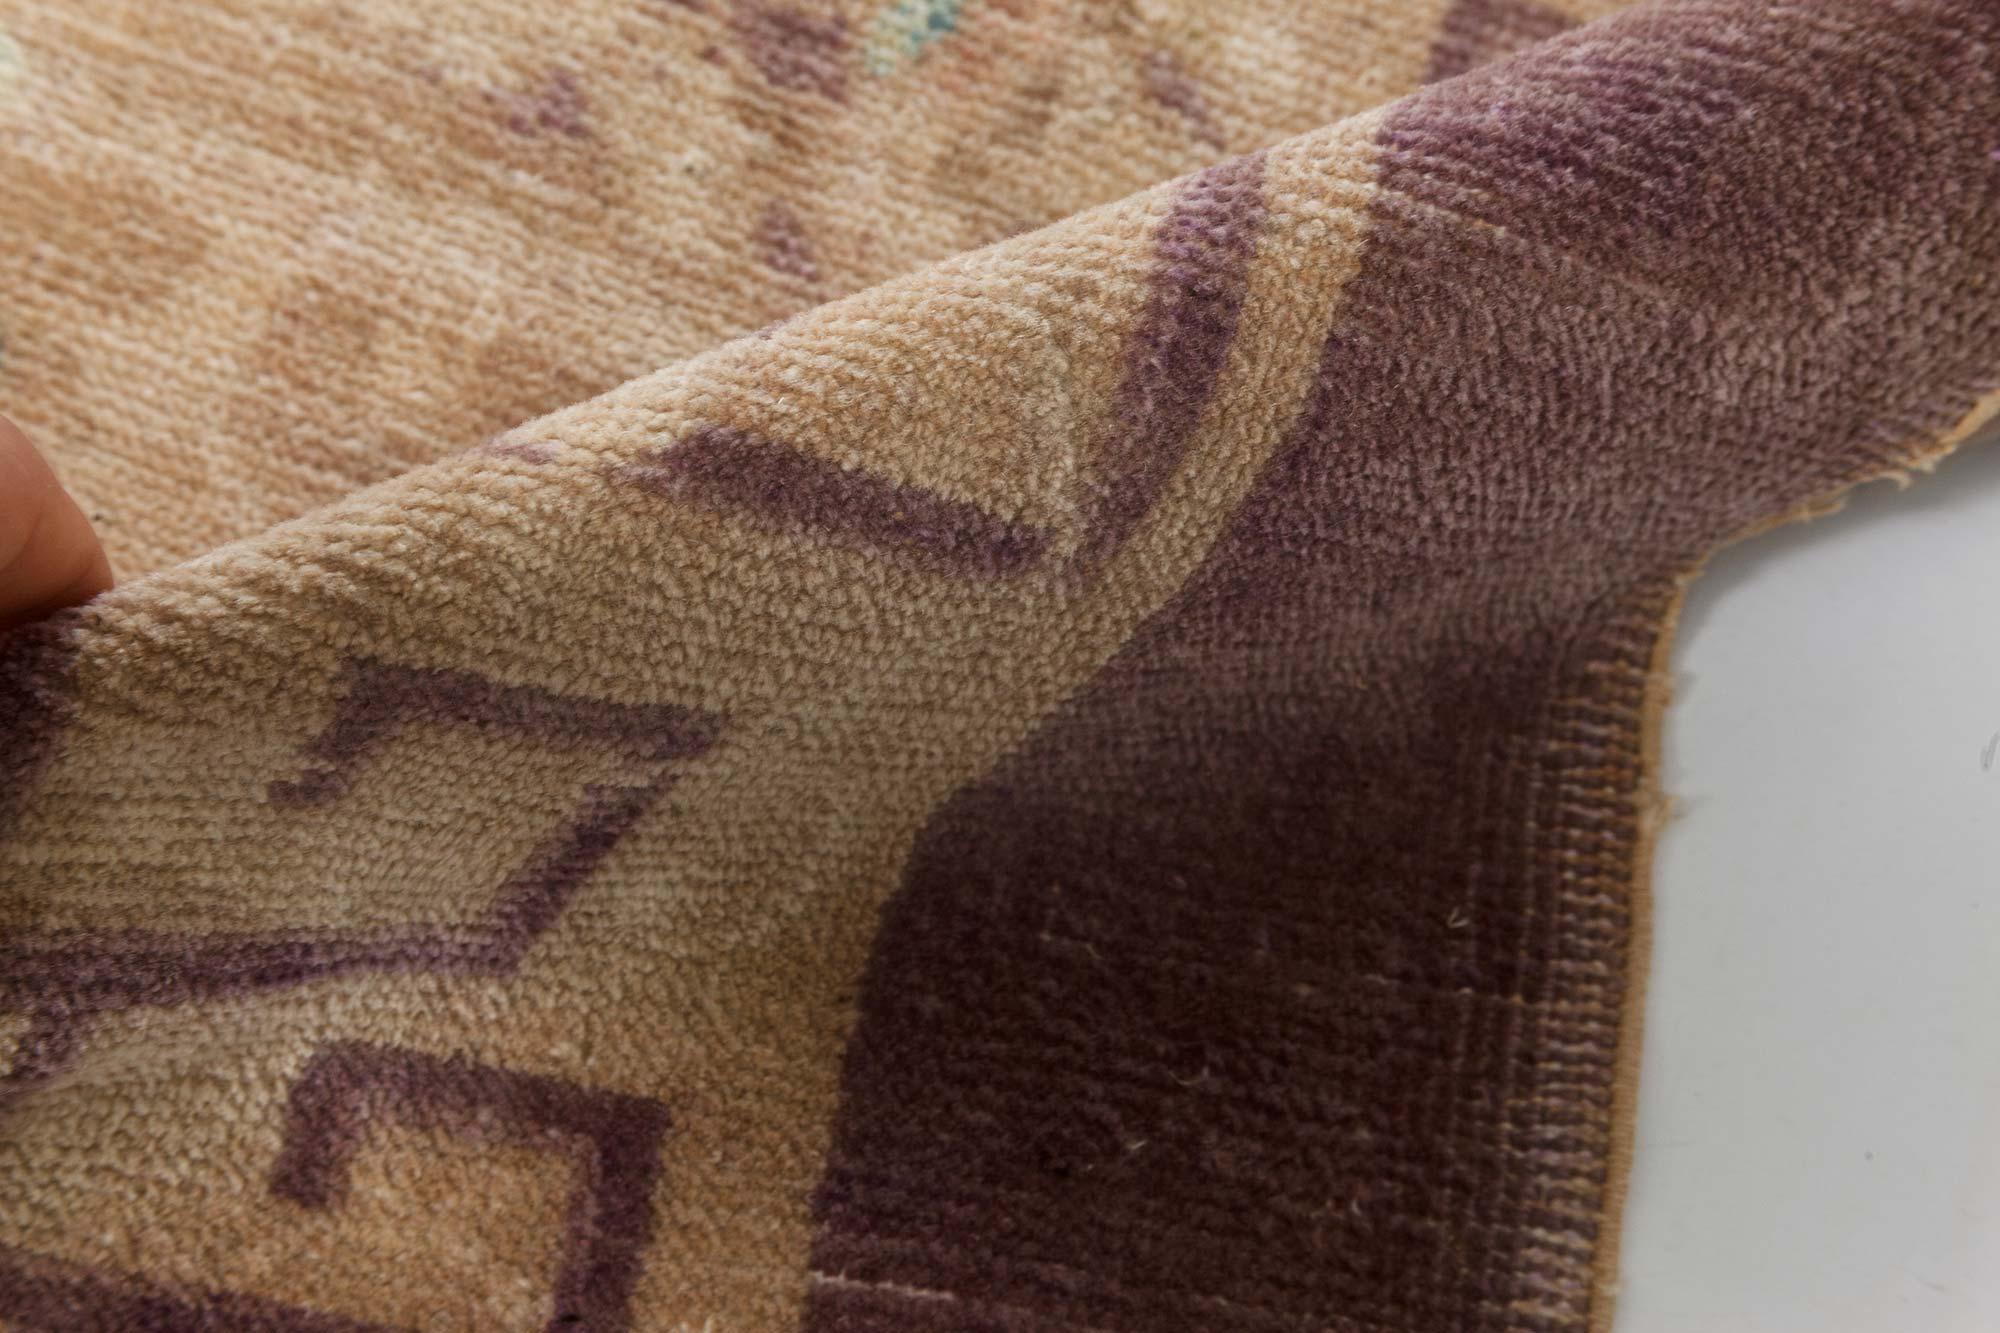 Vintage Chinese Art Deco brown handmade wool rug
Size: 9'0